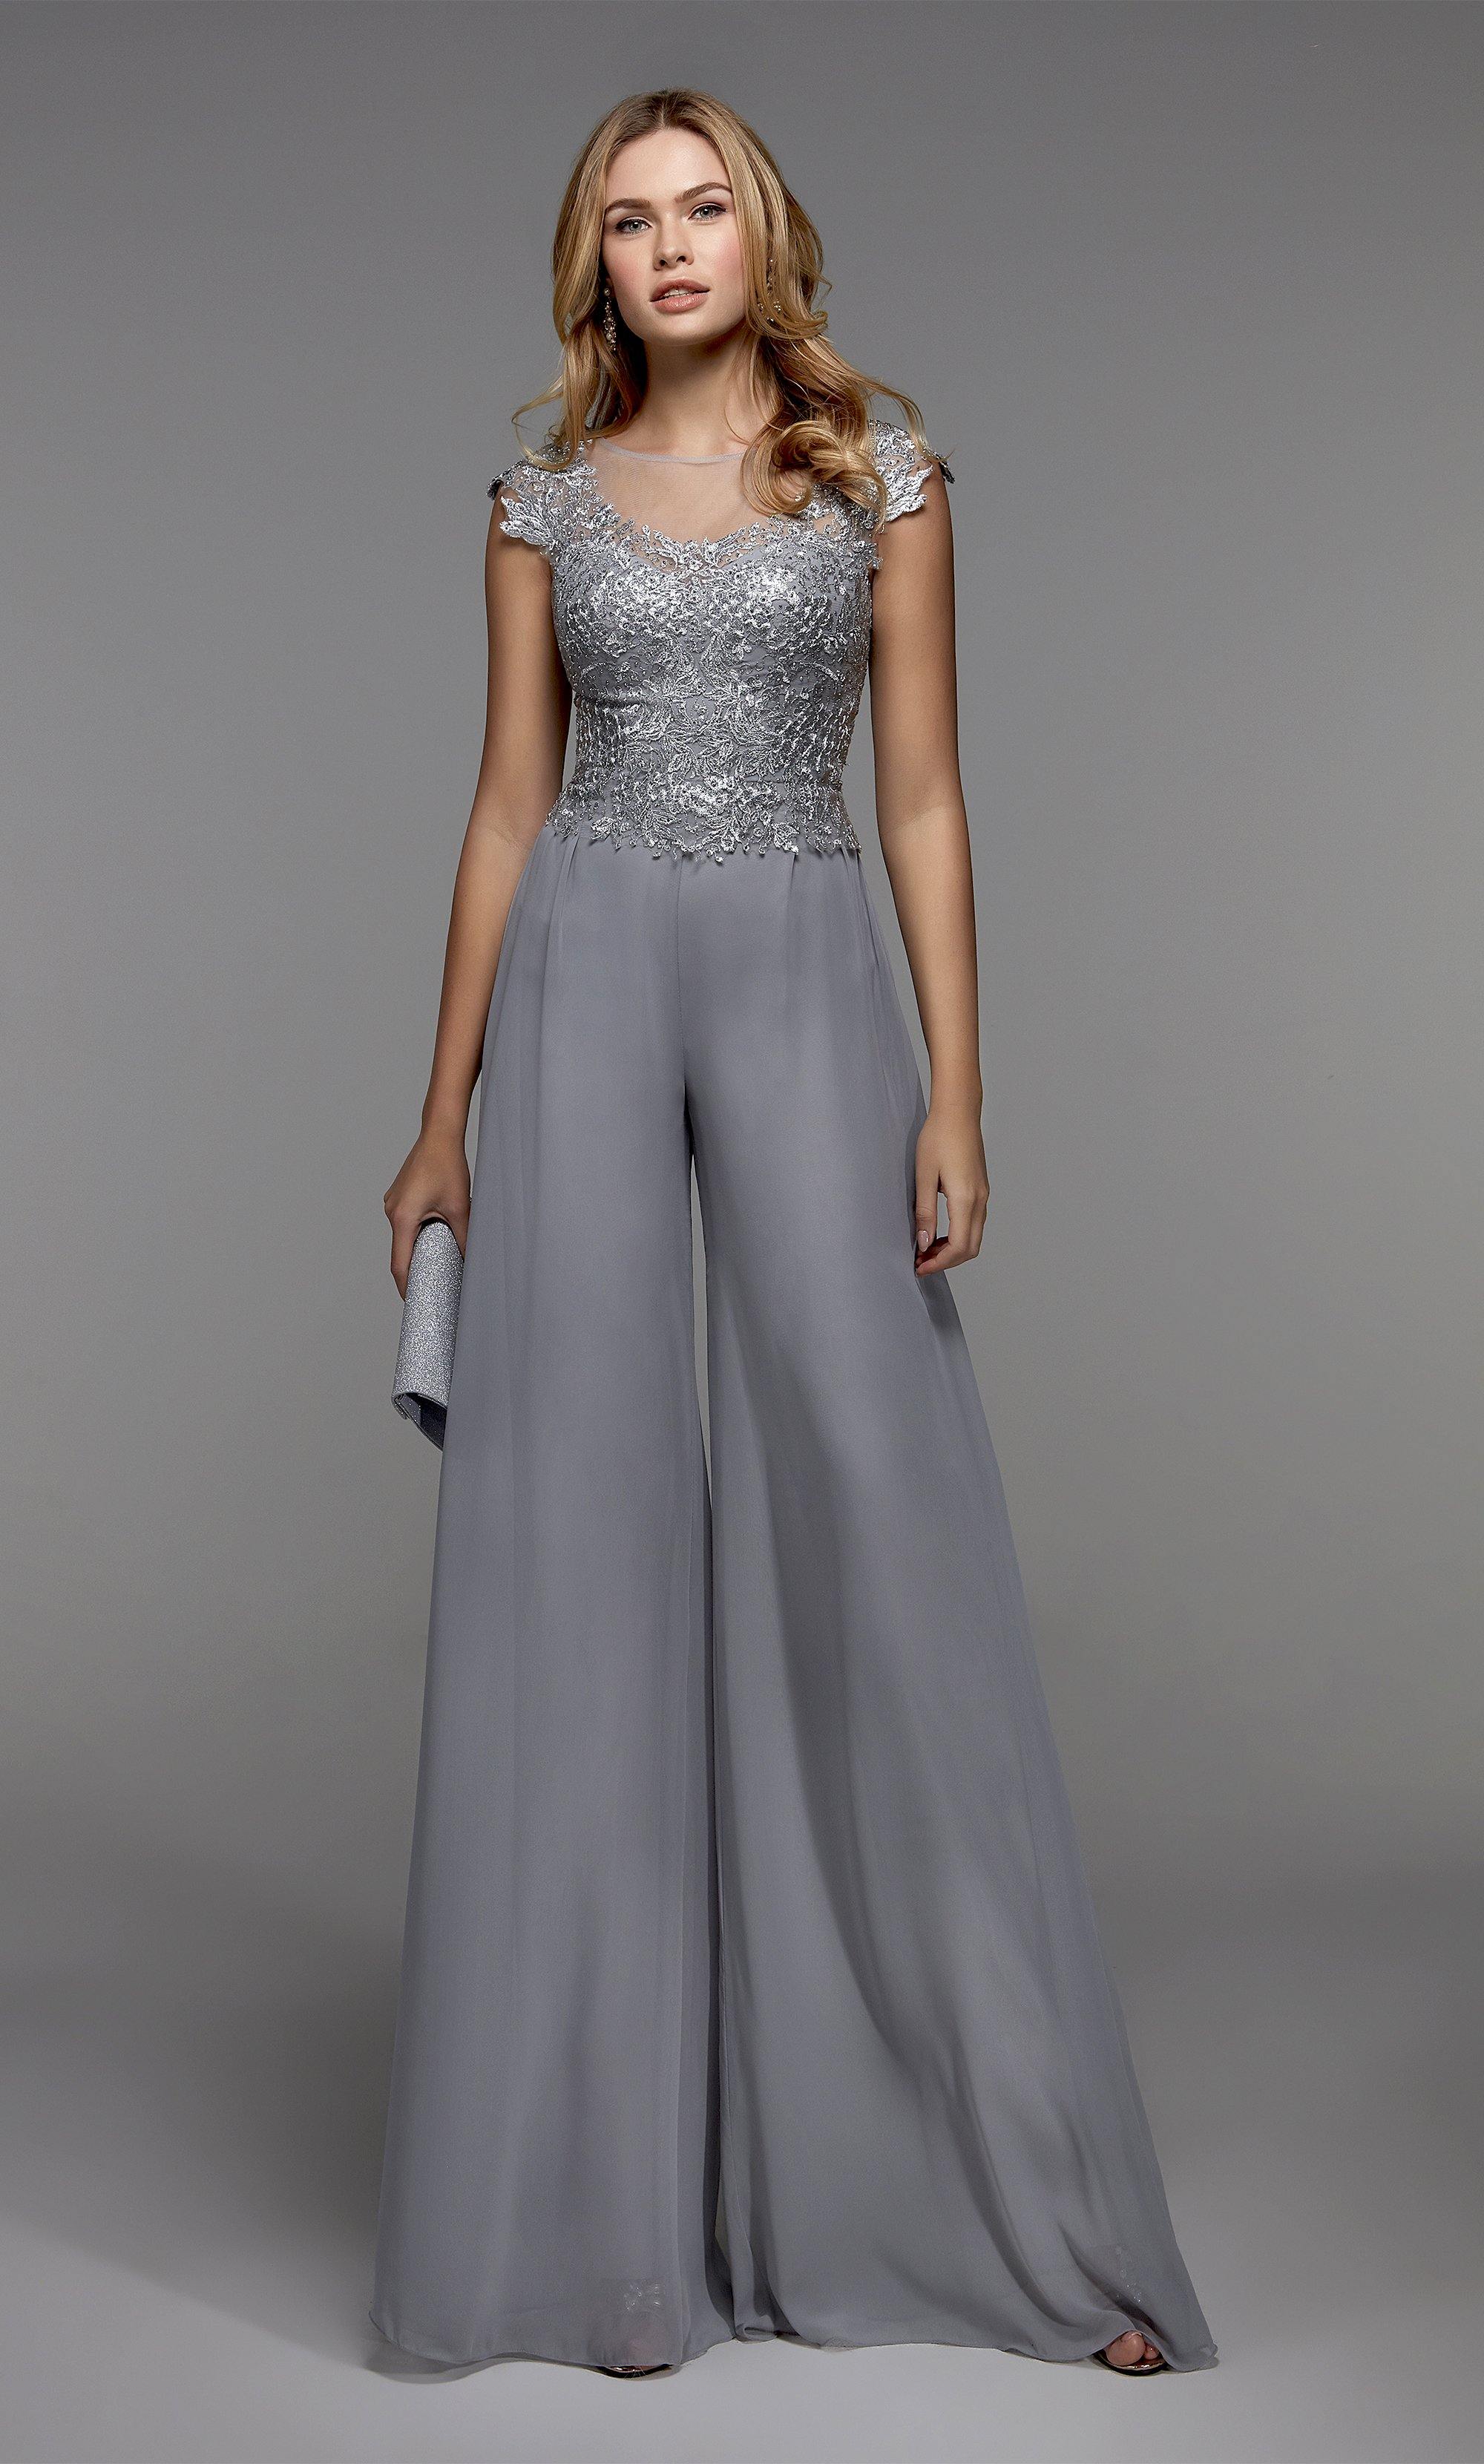 Formal Dress: 27488. Long Formal Playsuit, Illusion Neckline, Jumpsuit Alyce Paris